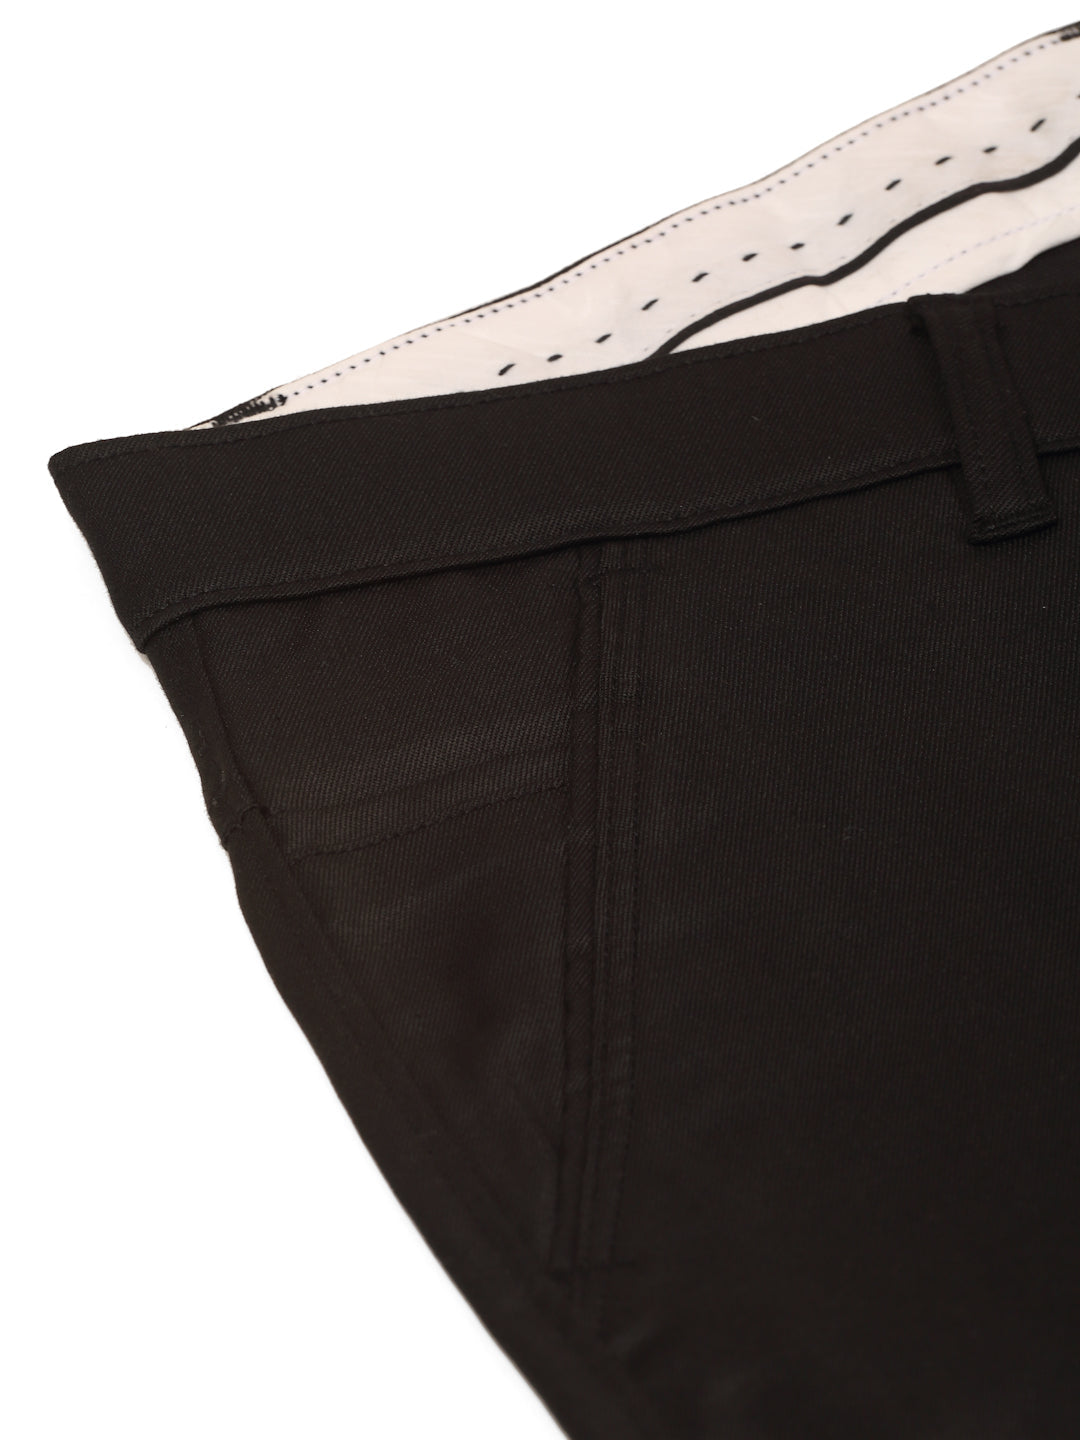 Men's Casual Cotton Solid Cargo Pants ( KGP 154 Black ) - Jainish